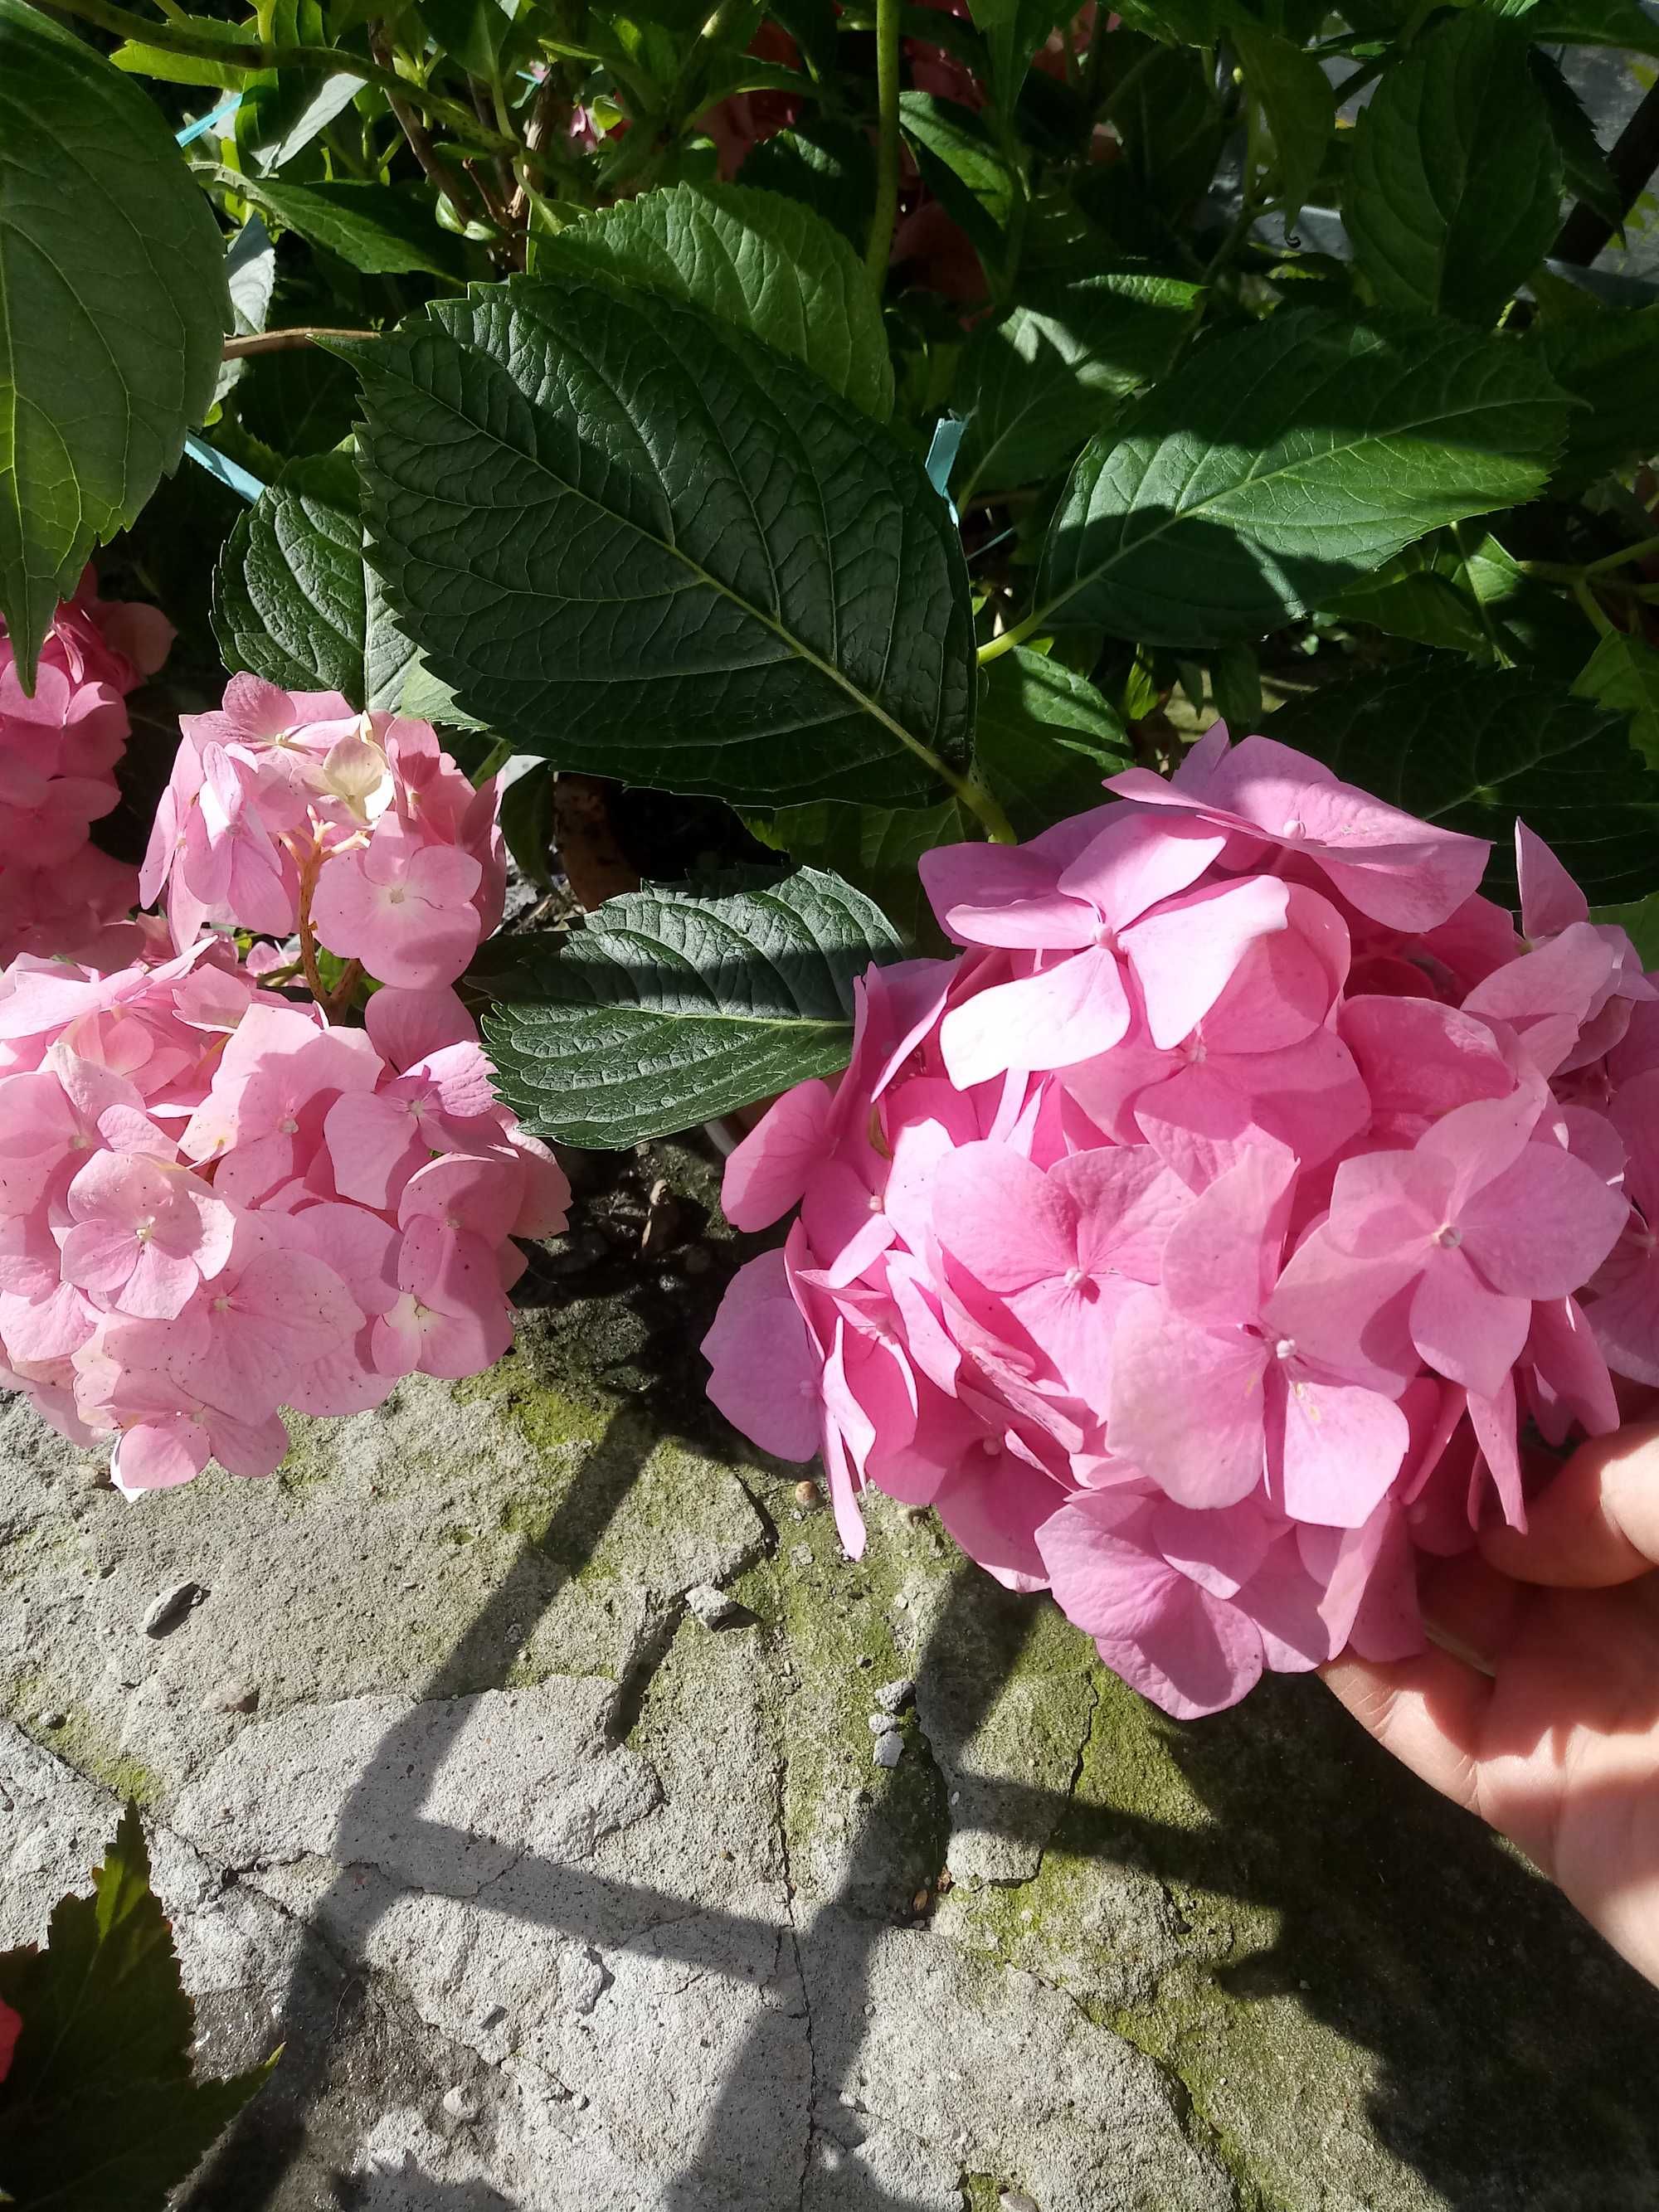 Hortensja ogrodowa różowy kwiat w doniczkach z pąkami.